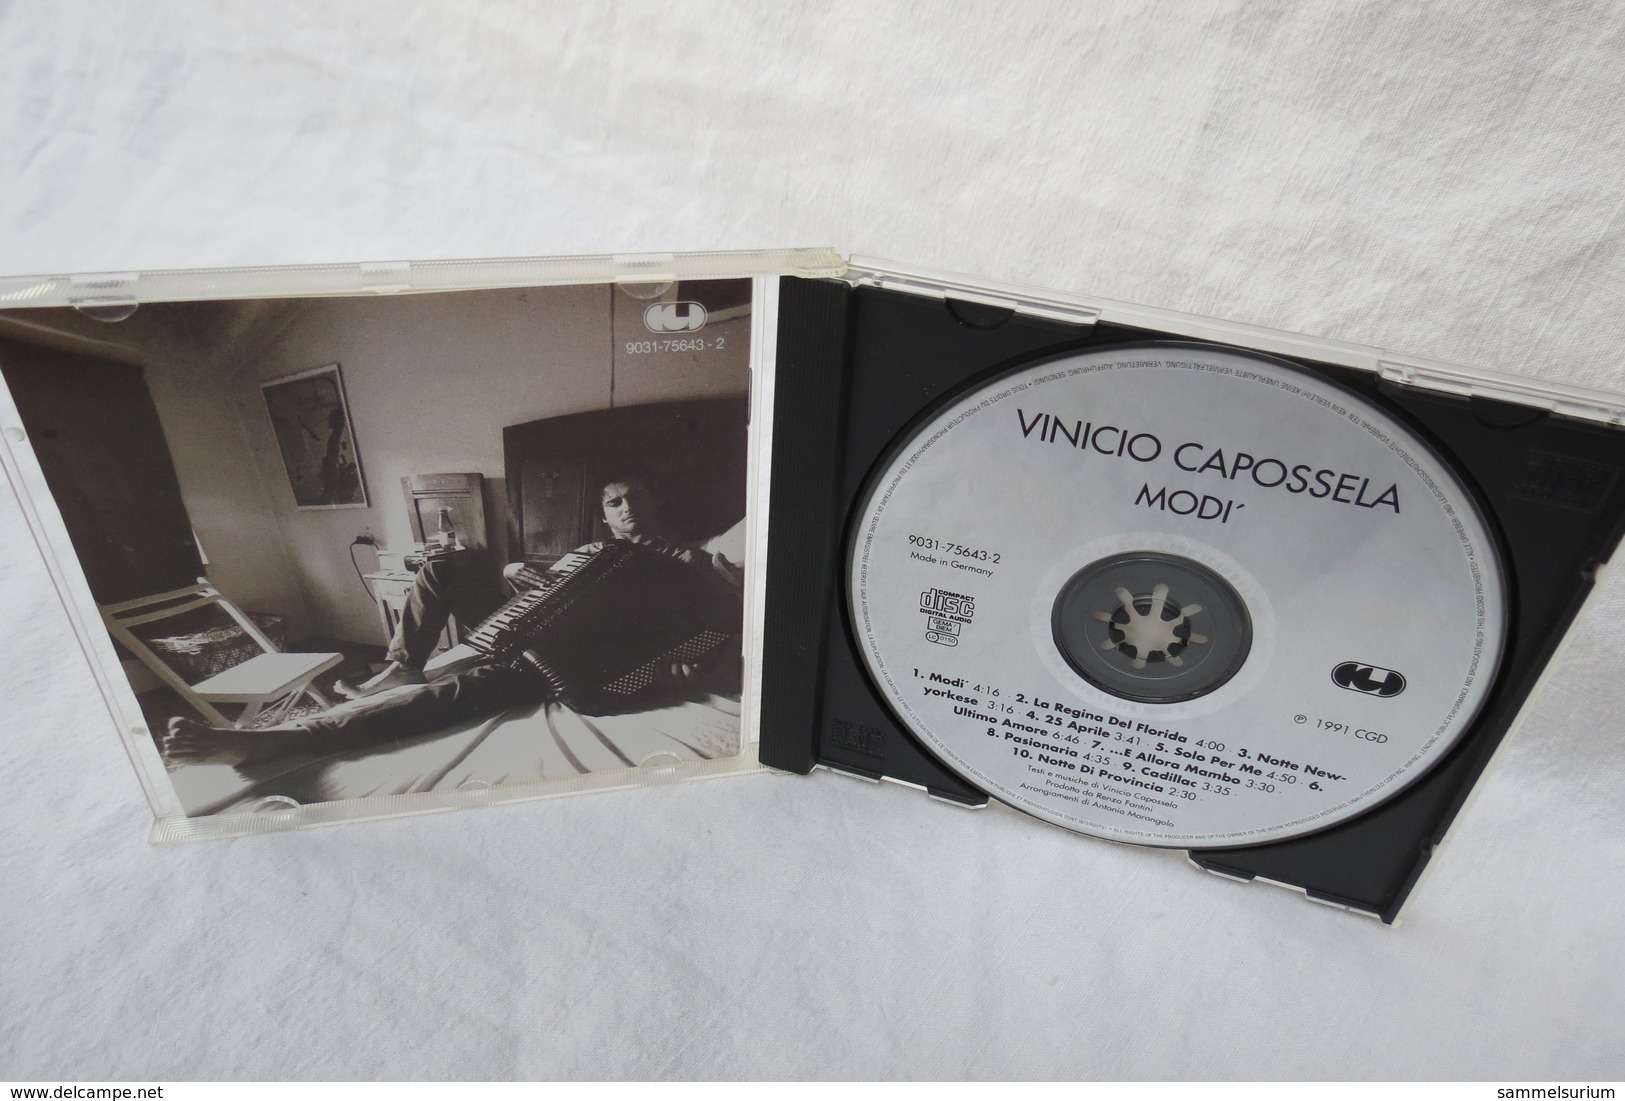 CD "Modi" Vinicio Capossela - World Music